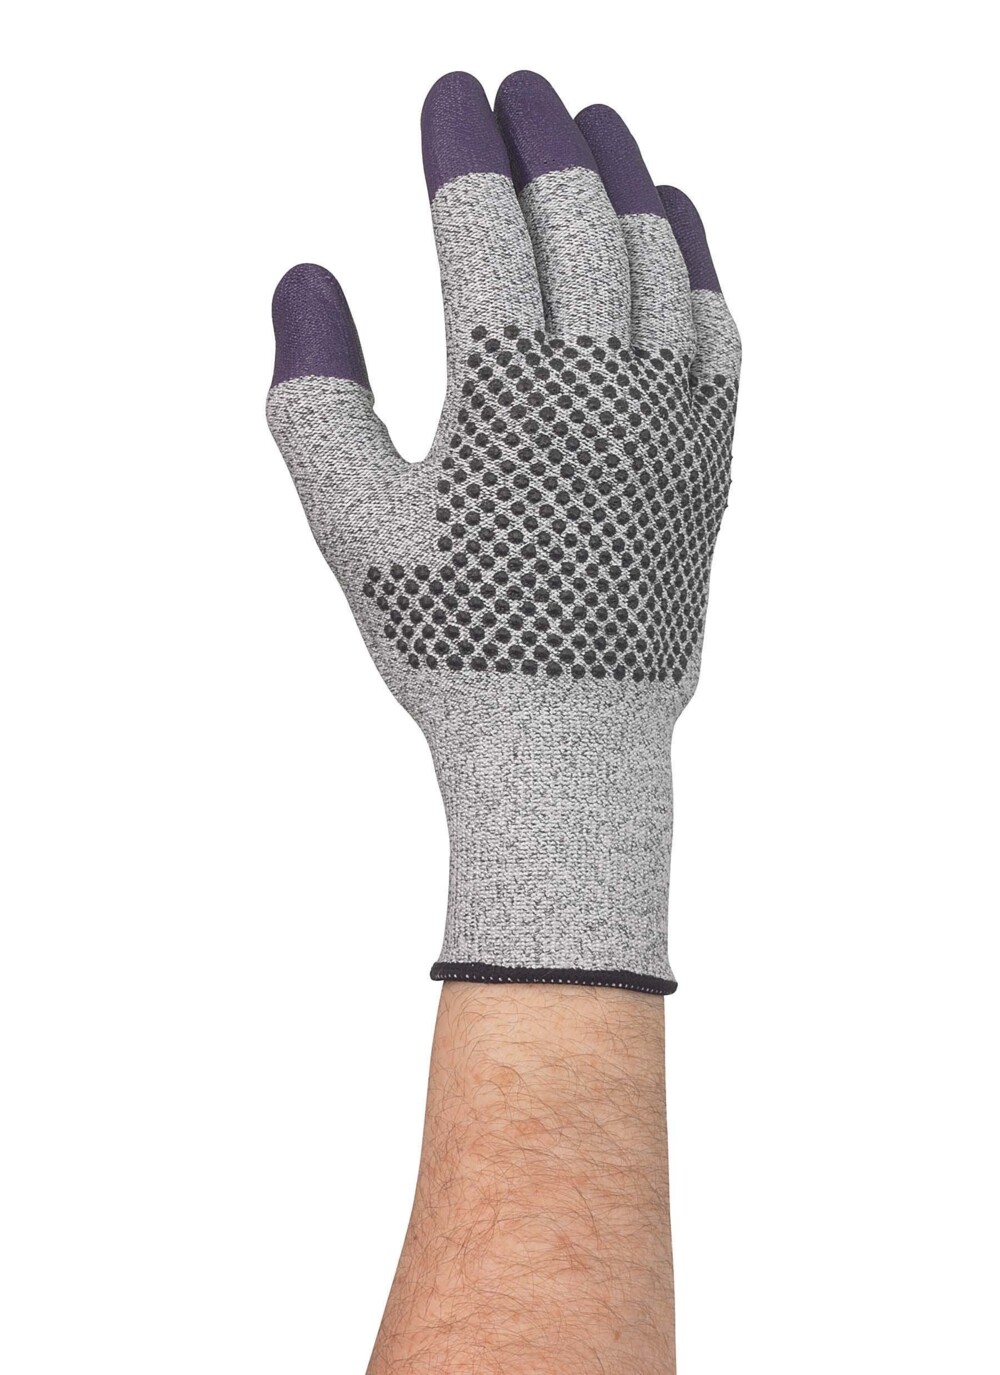 KleenGuard® G60 Endurapro™ Dual Grip™ violette Nitrilhandschuhe 97430 Grau und Violett, 7, 1x12 (12 Handschuhe) - 97430